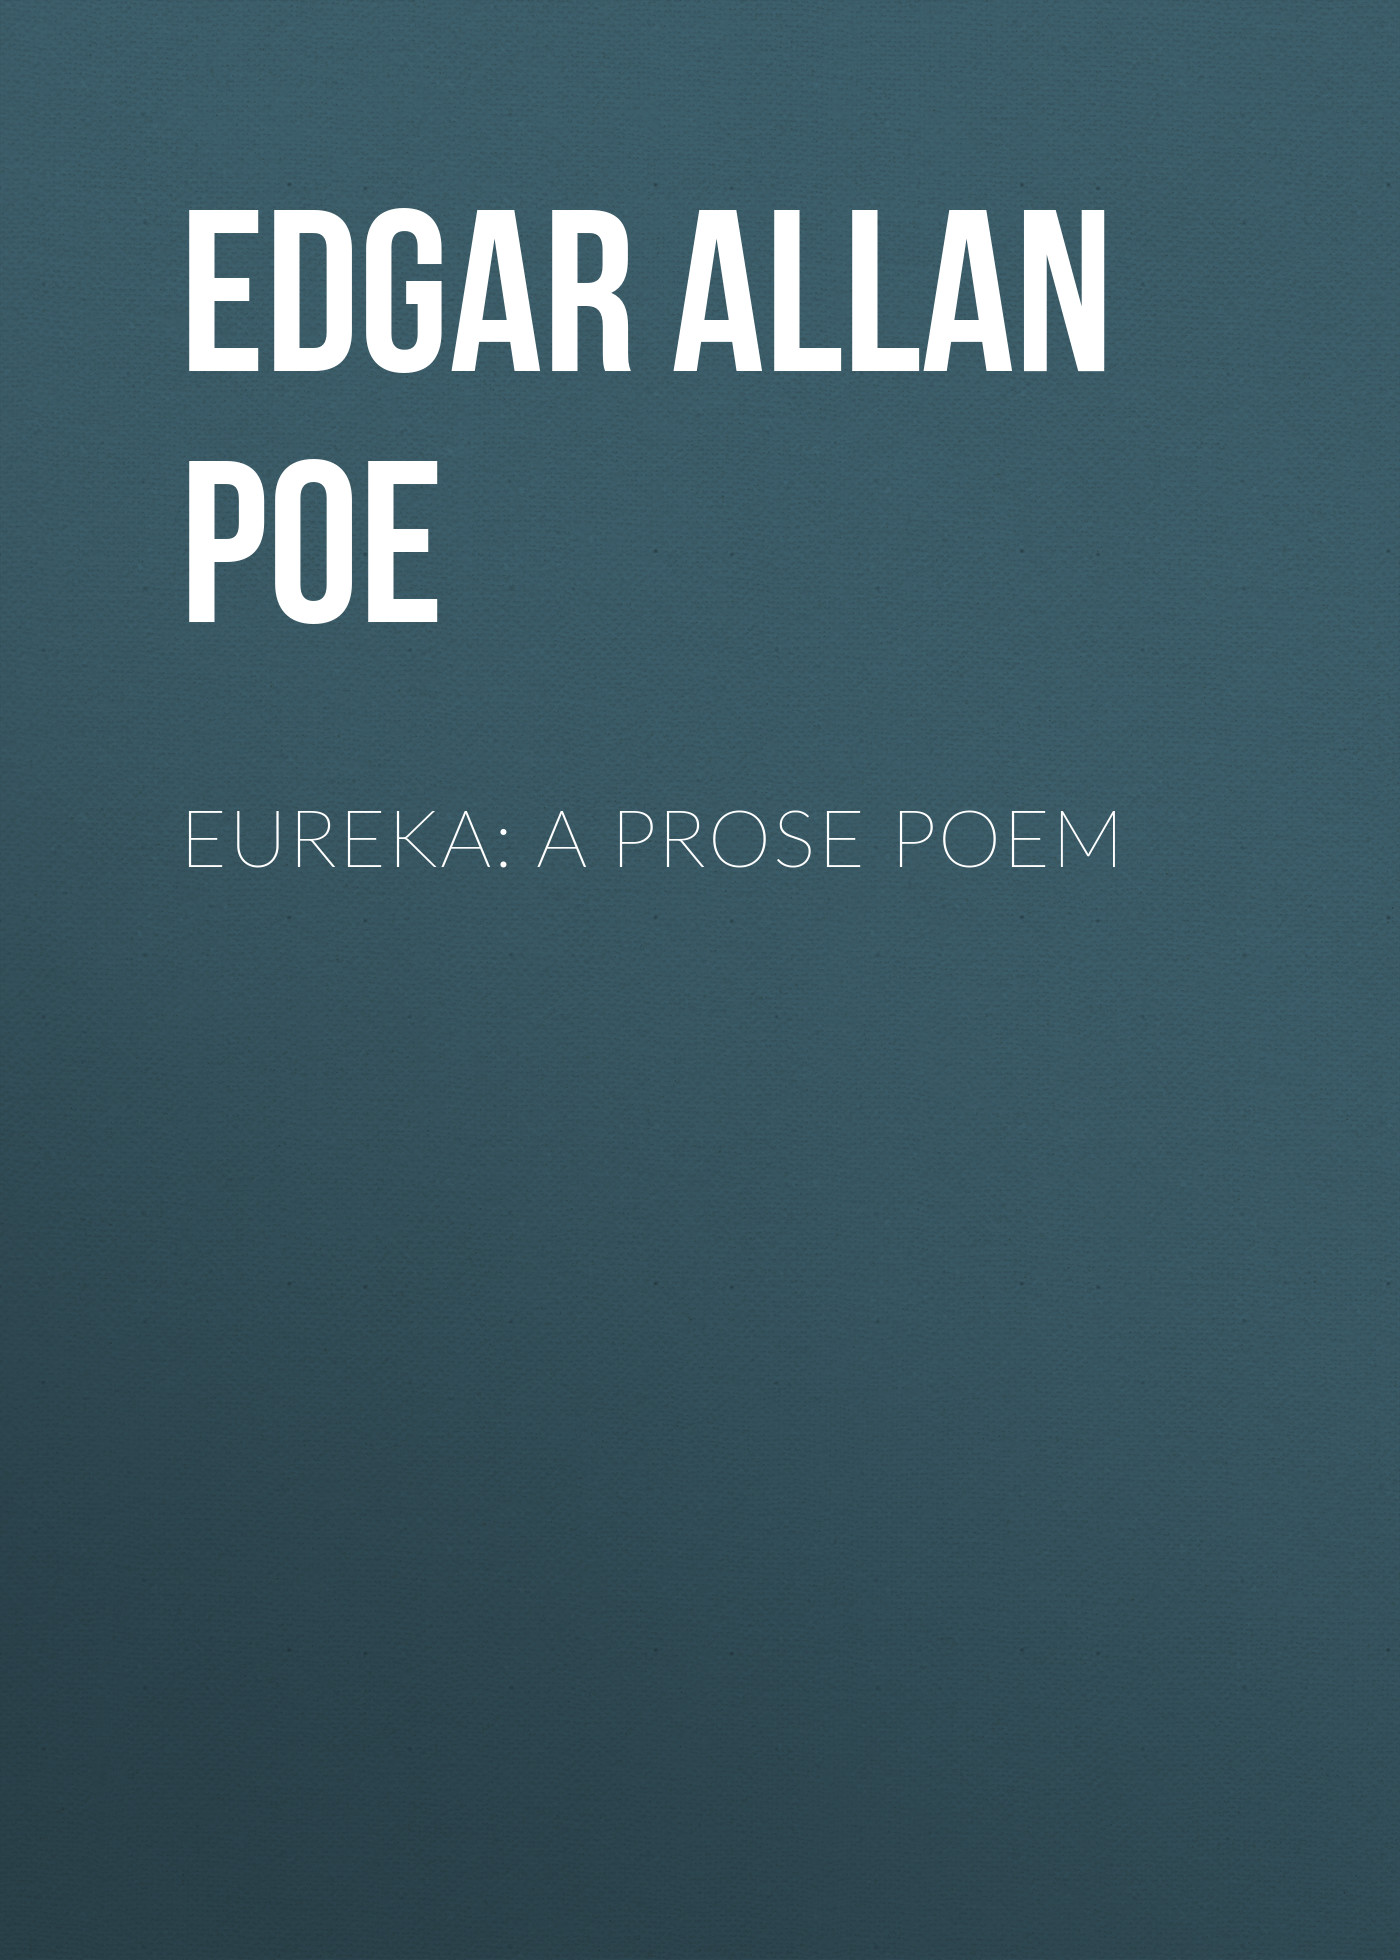 Книга Eureka: A Prose Poem из серии , созданная Edgar Poe, может относится к жанру Литература 19 века, Зарубежная старинная литература, Зарубежная классика. Стоимость электронной книги Eureka: A Prose Poem с идентификатором 25449284 составляет 0 руб.